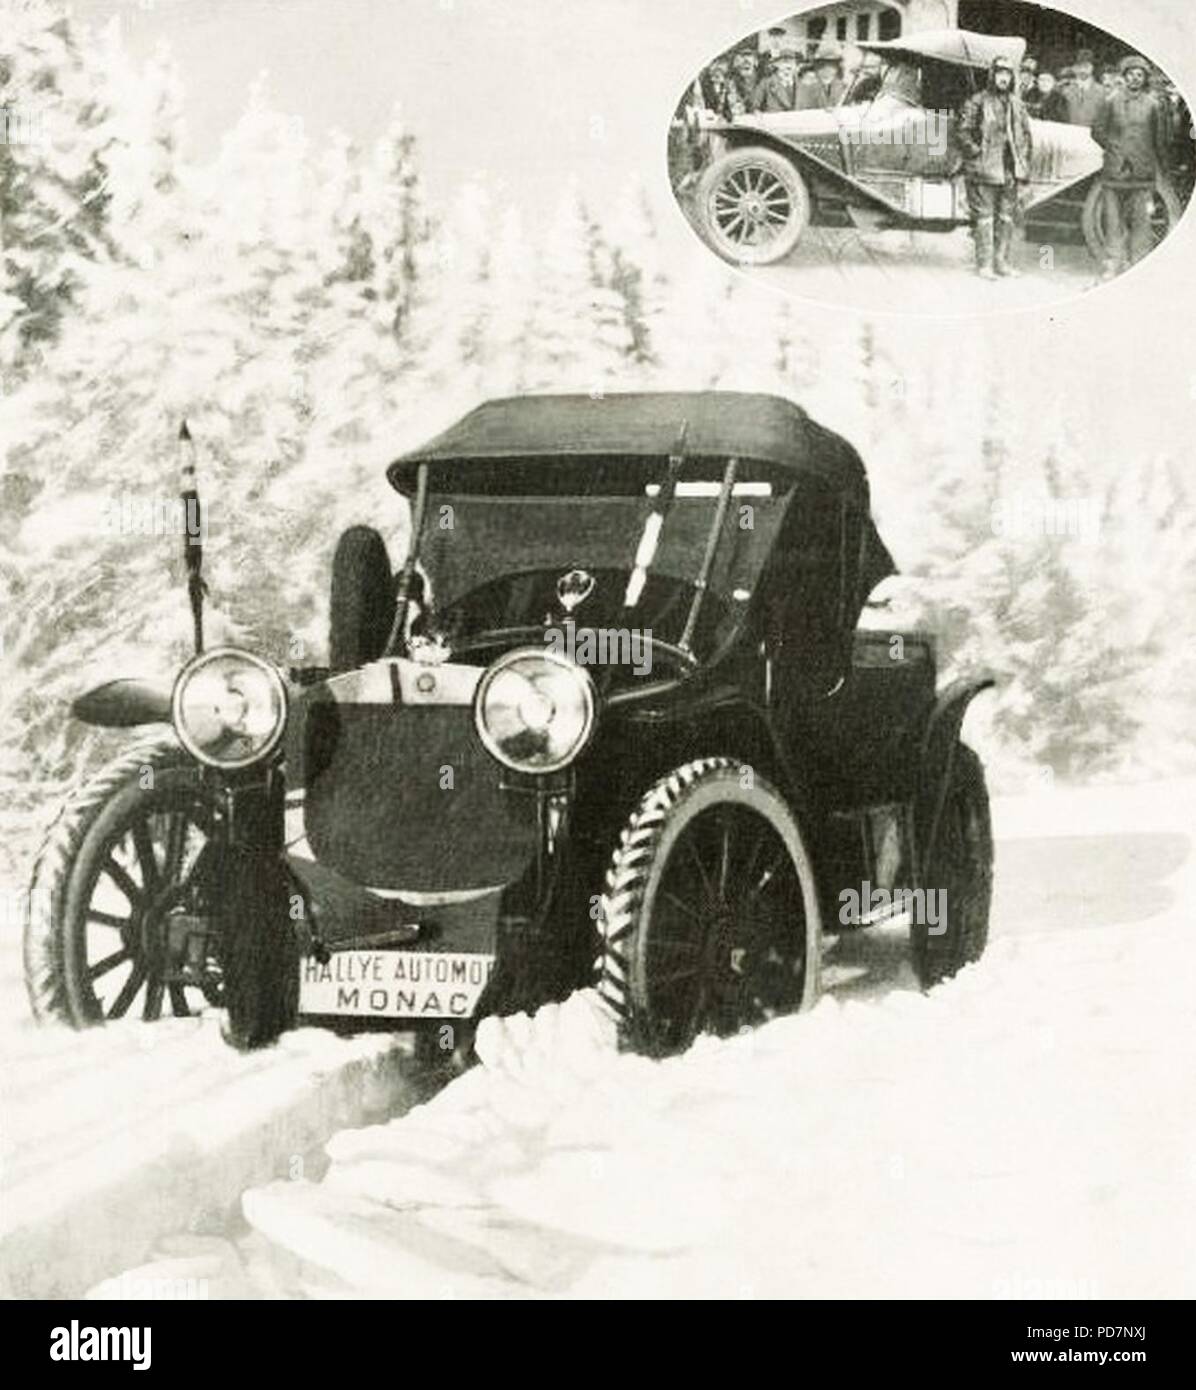 Andrei Nagel au rallye Monte-Carlo 1912 seul parti de Saint-Pétersbourg (3 257 kilomètres - ingénieurs à Monaco). Banque D'Images